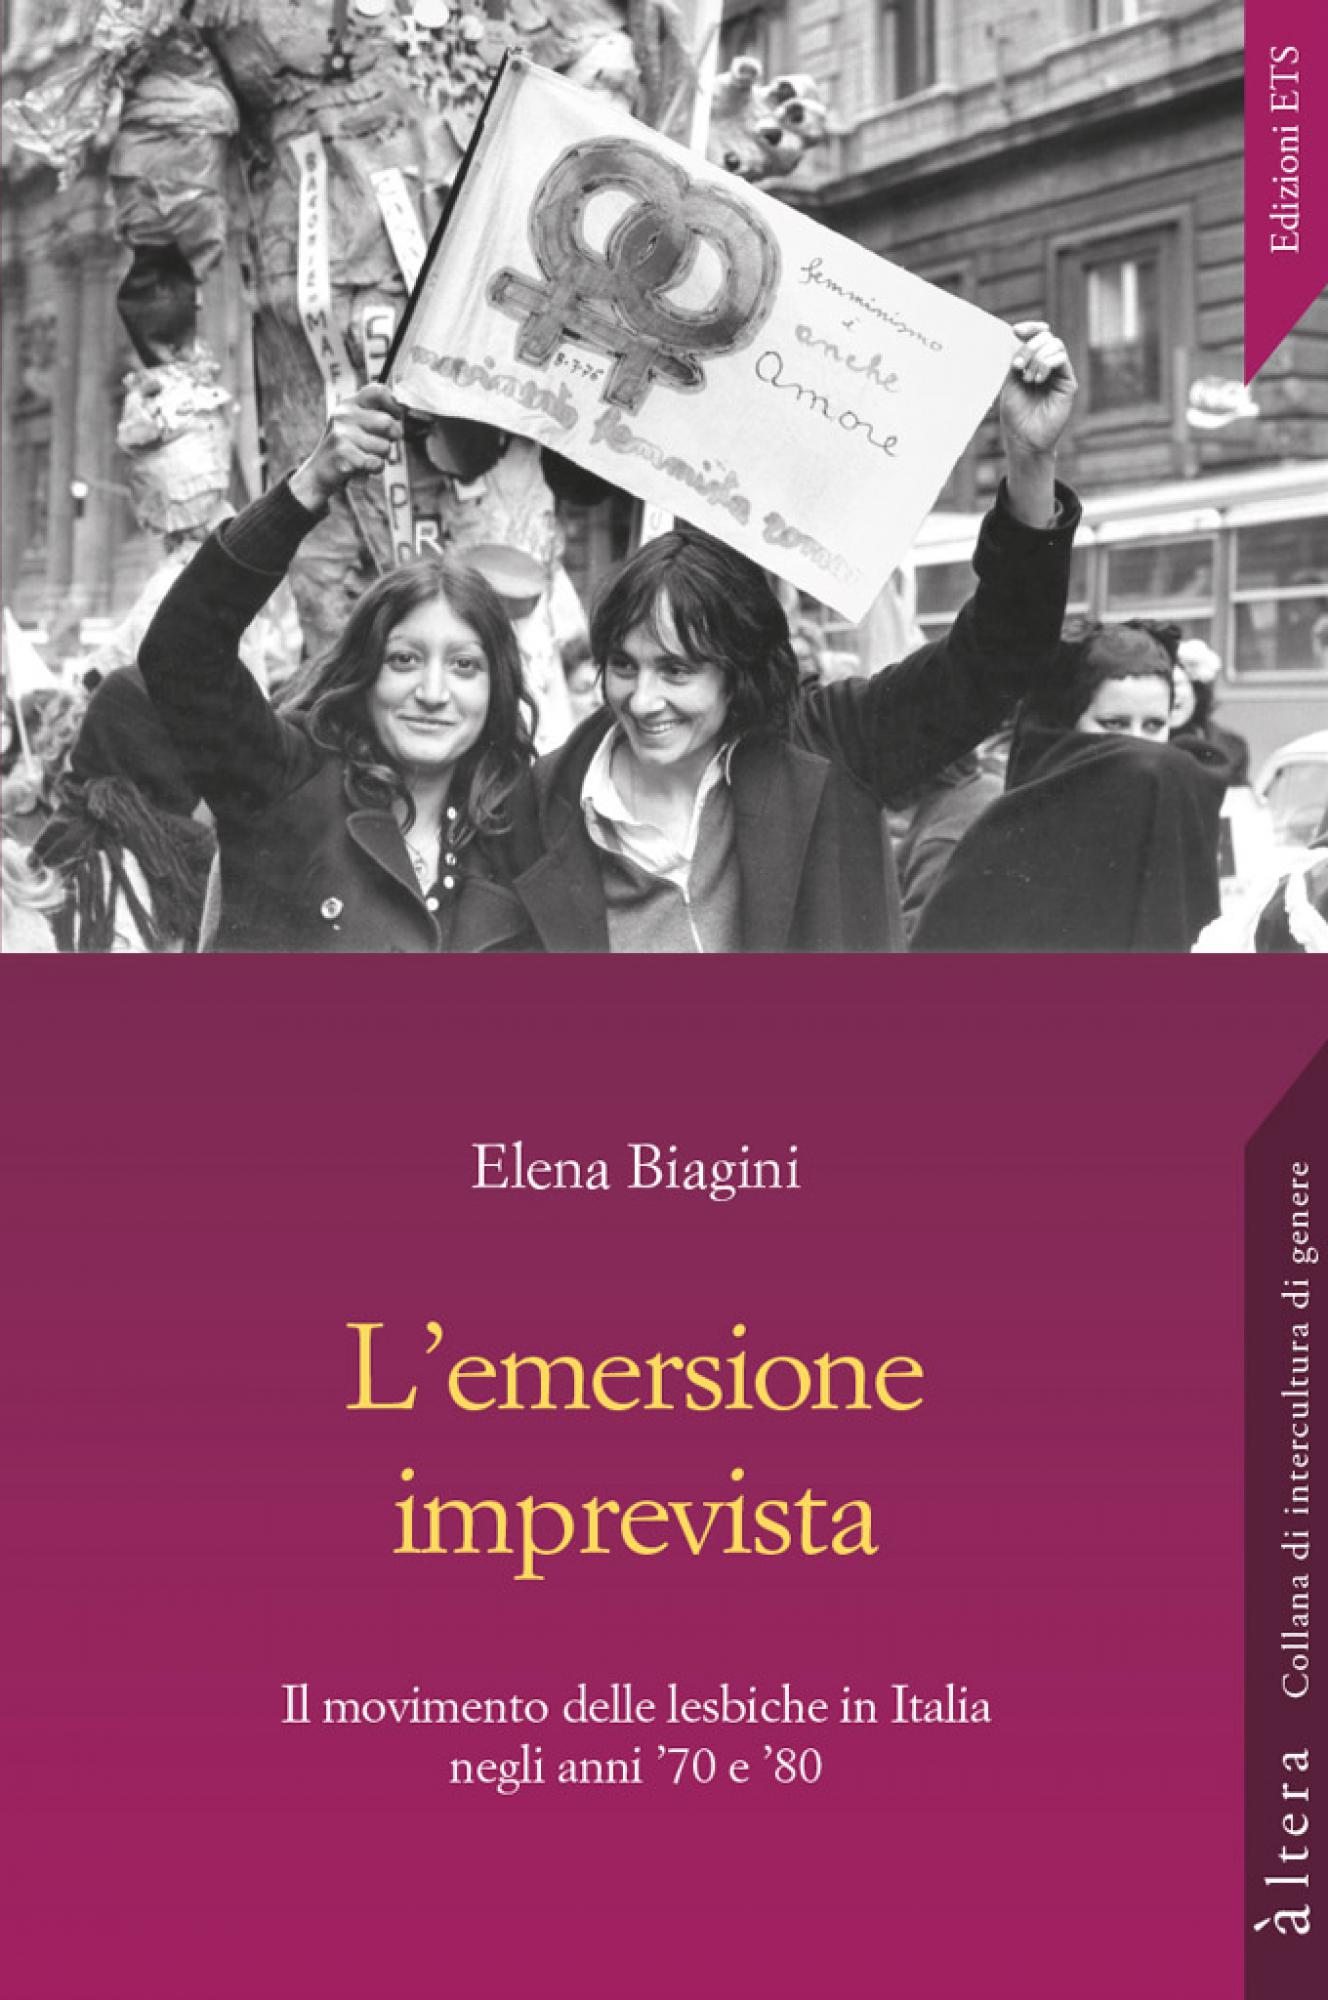 L’emersione imprevista.Il movimento delle lesbiche in Italia negli anni ’70 e ’80